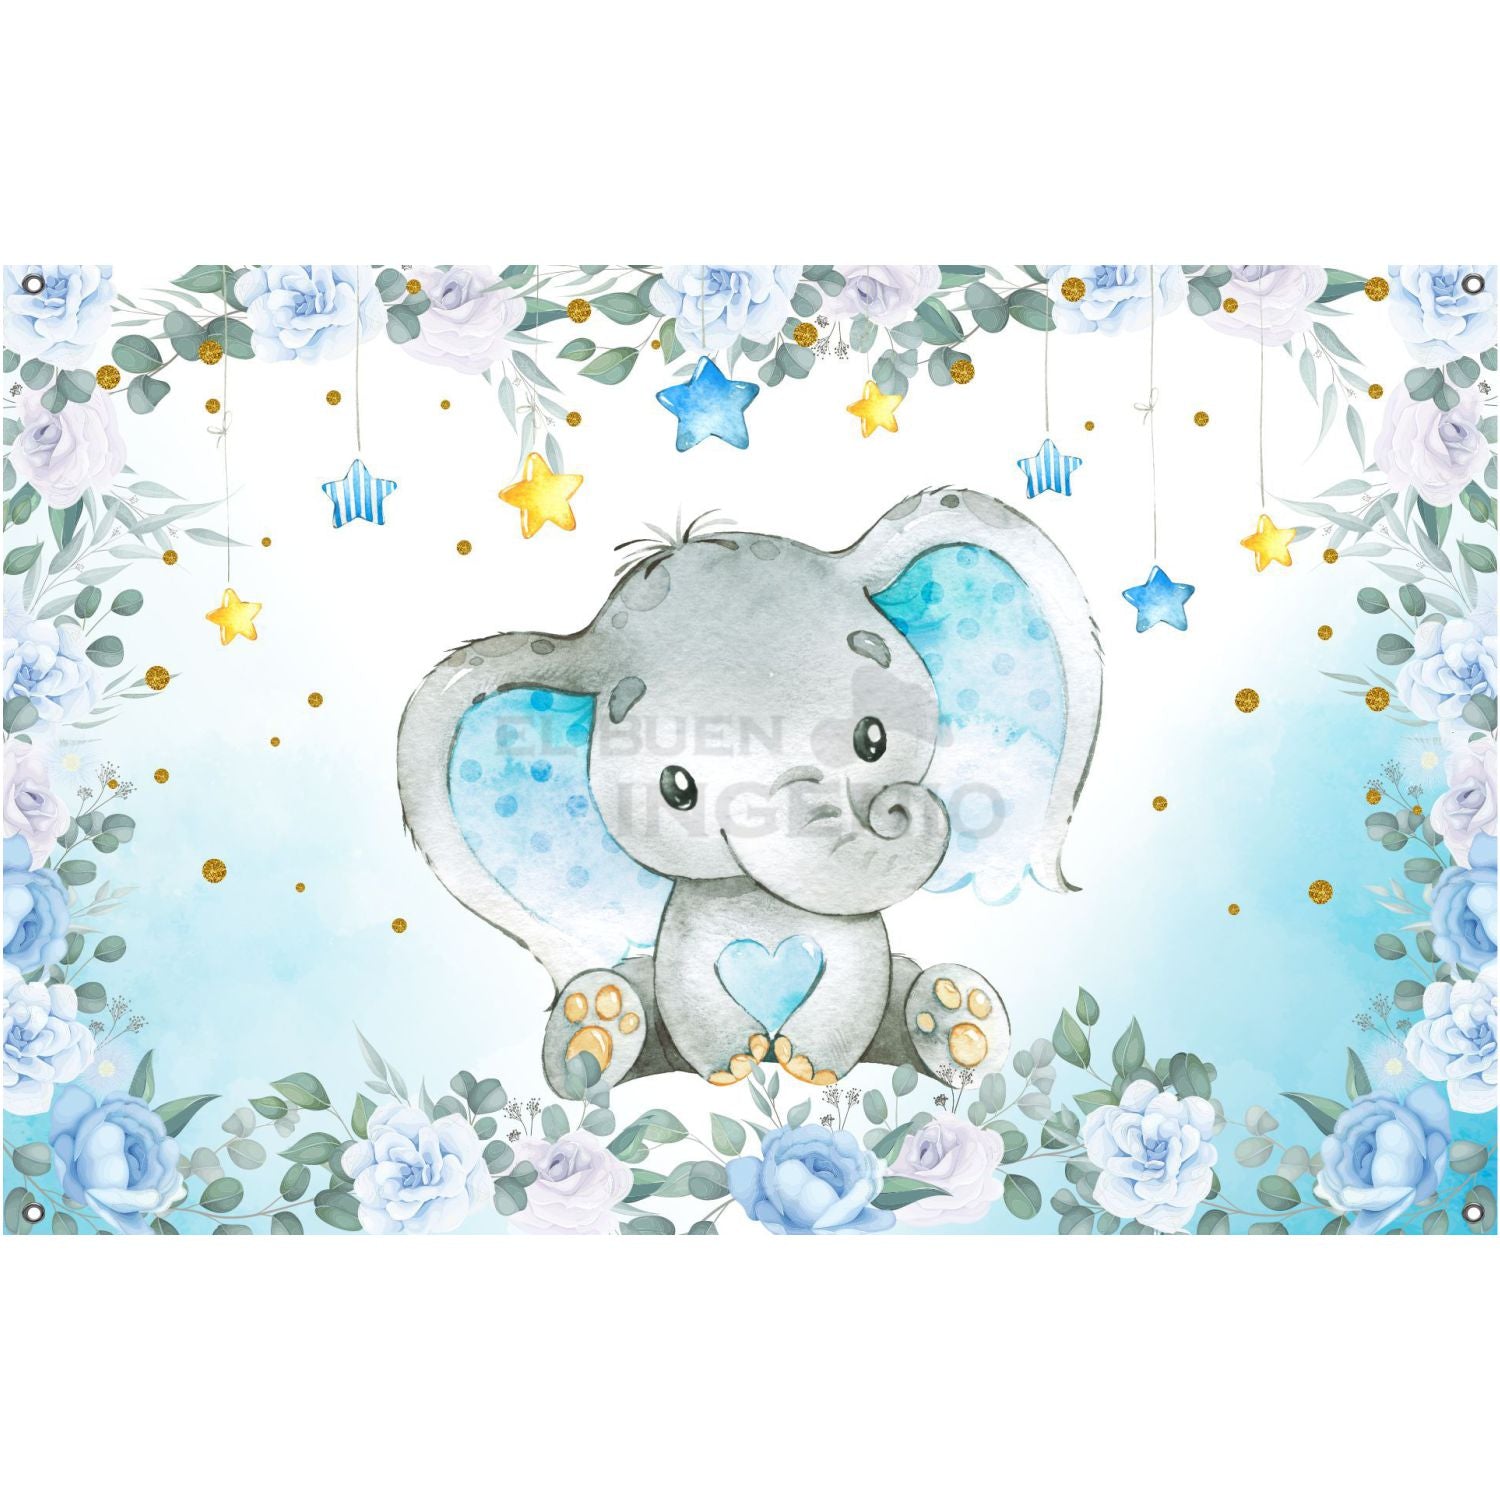 Lona impresa decoración fiesta mesa de dulces tema Baby Shower Baby Elefante Azul